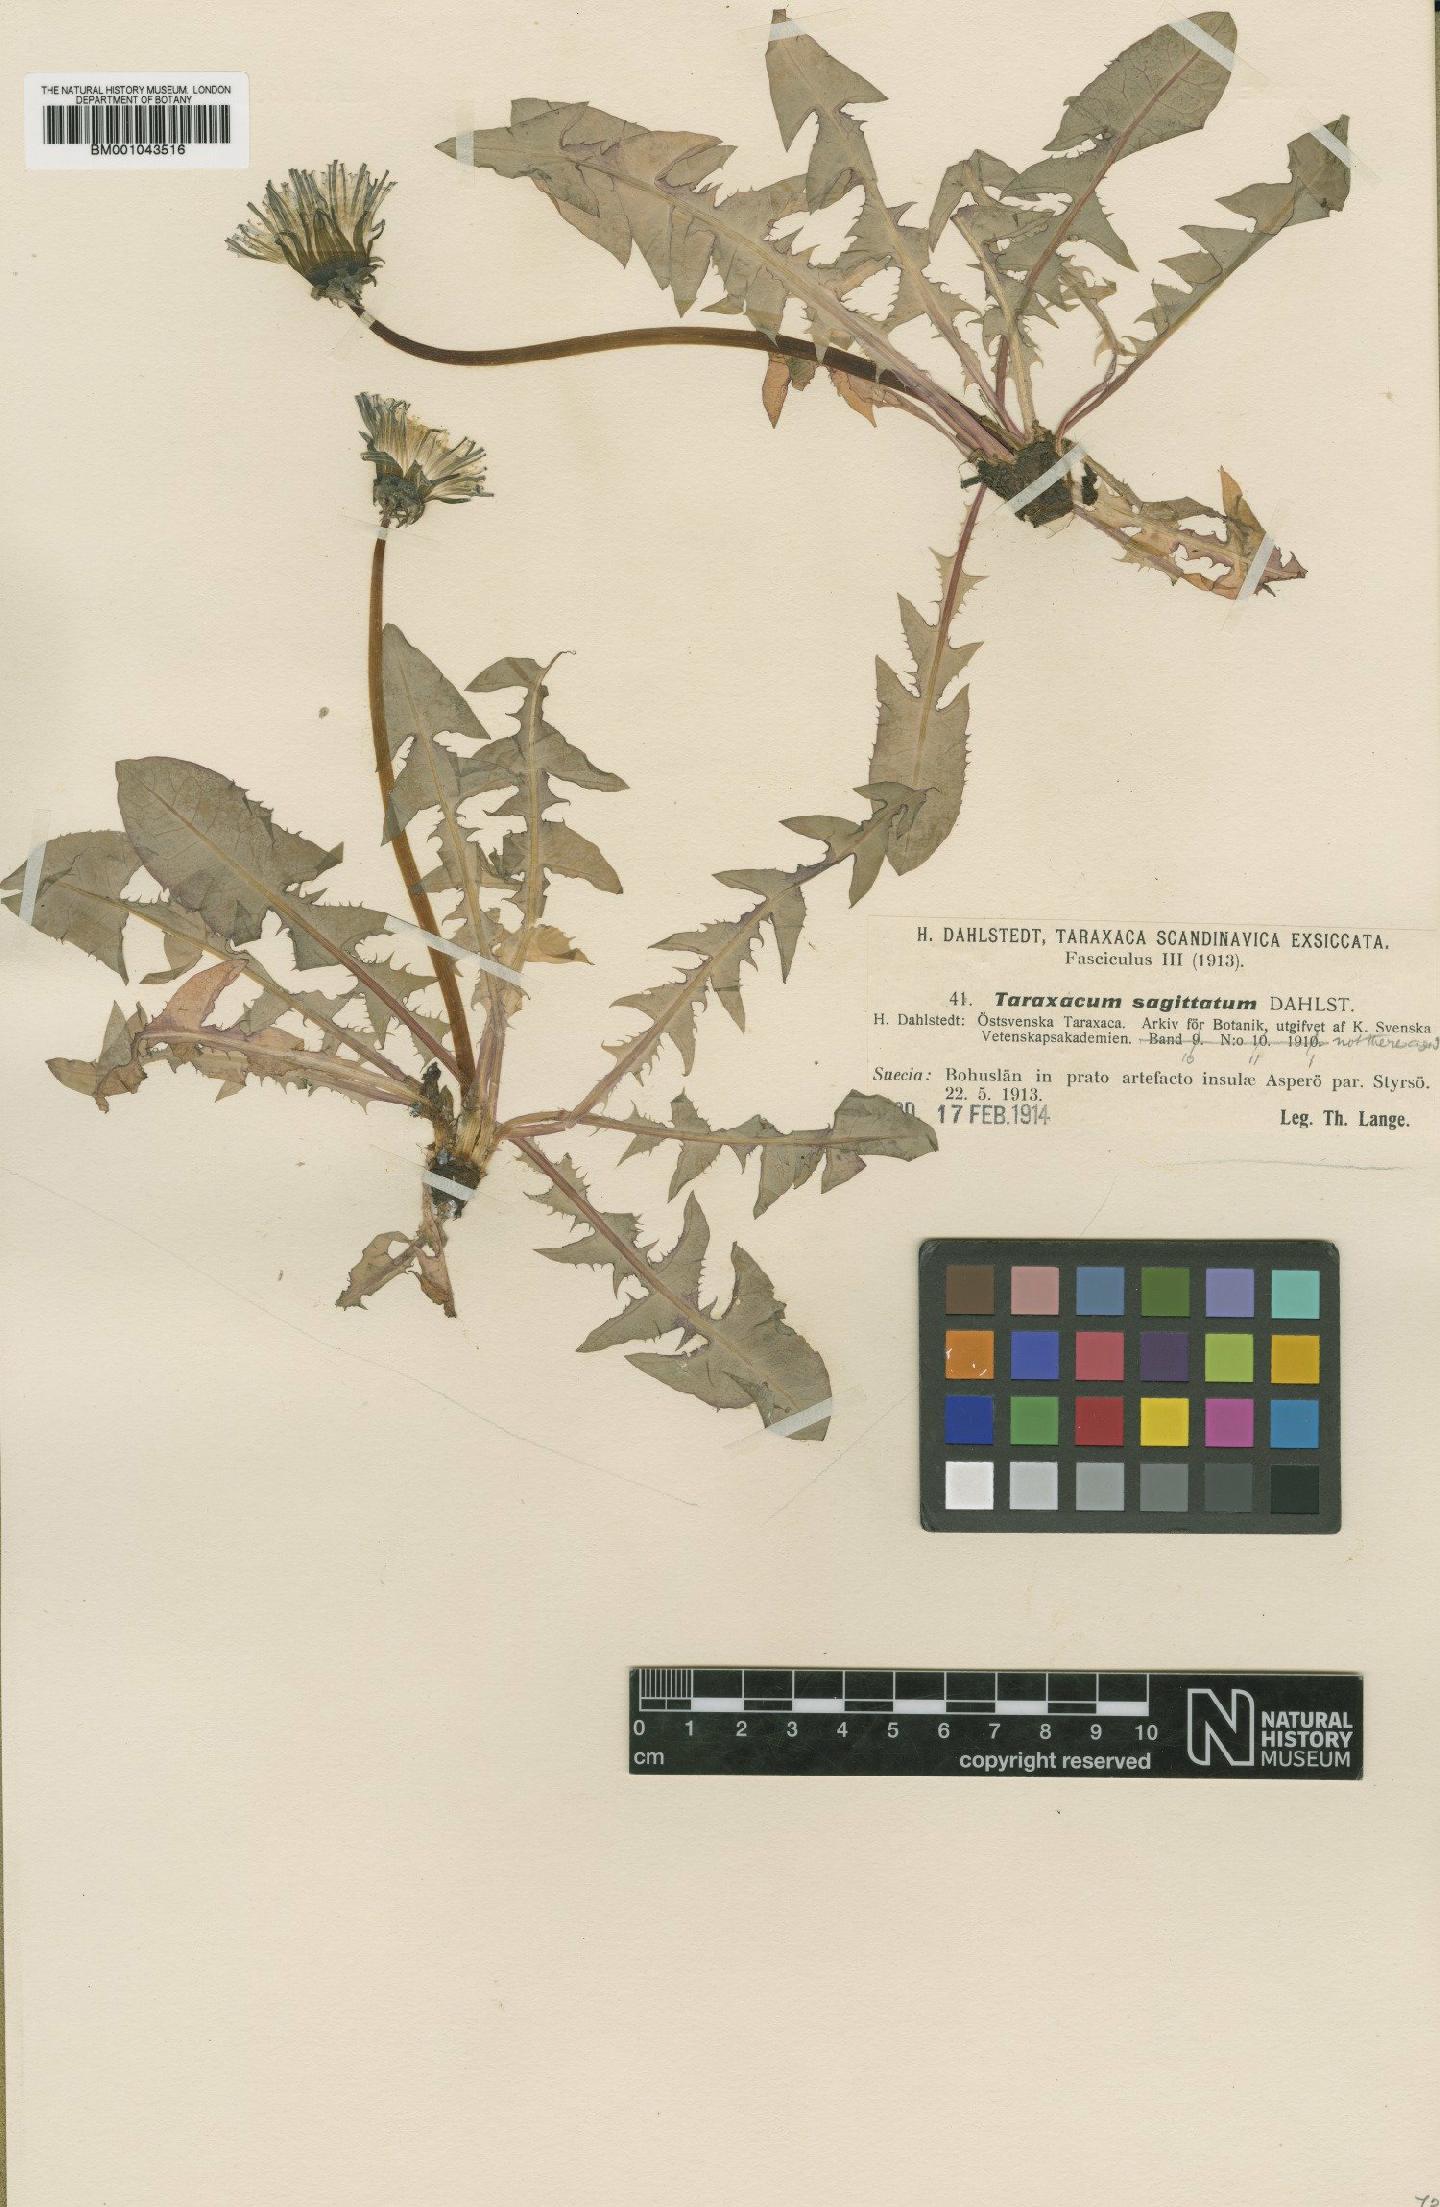 To NHMUK collection (Taraxacum sagittatum Dahlst.; Type; NHMUK:ecatalogue:1999290)